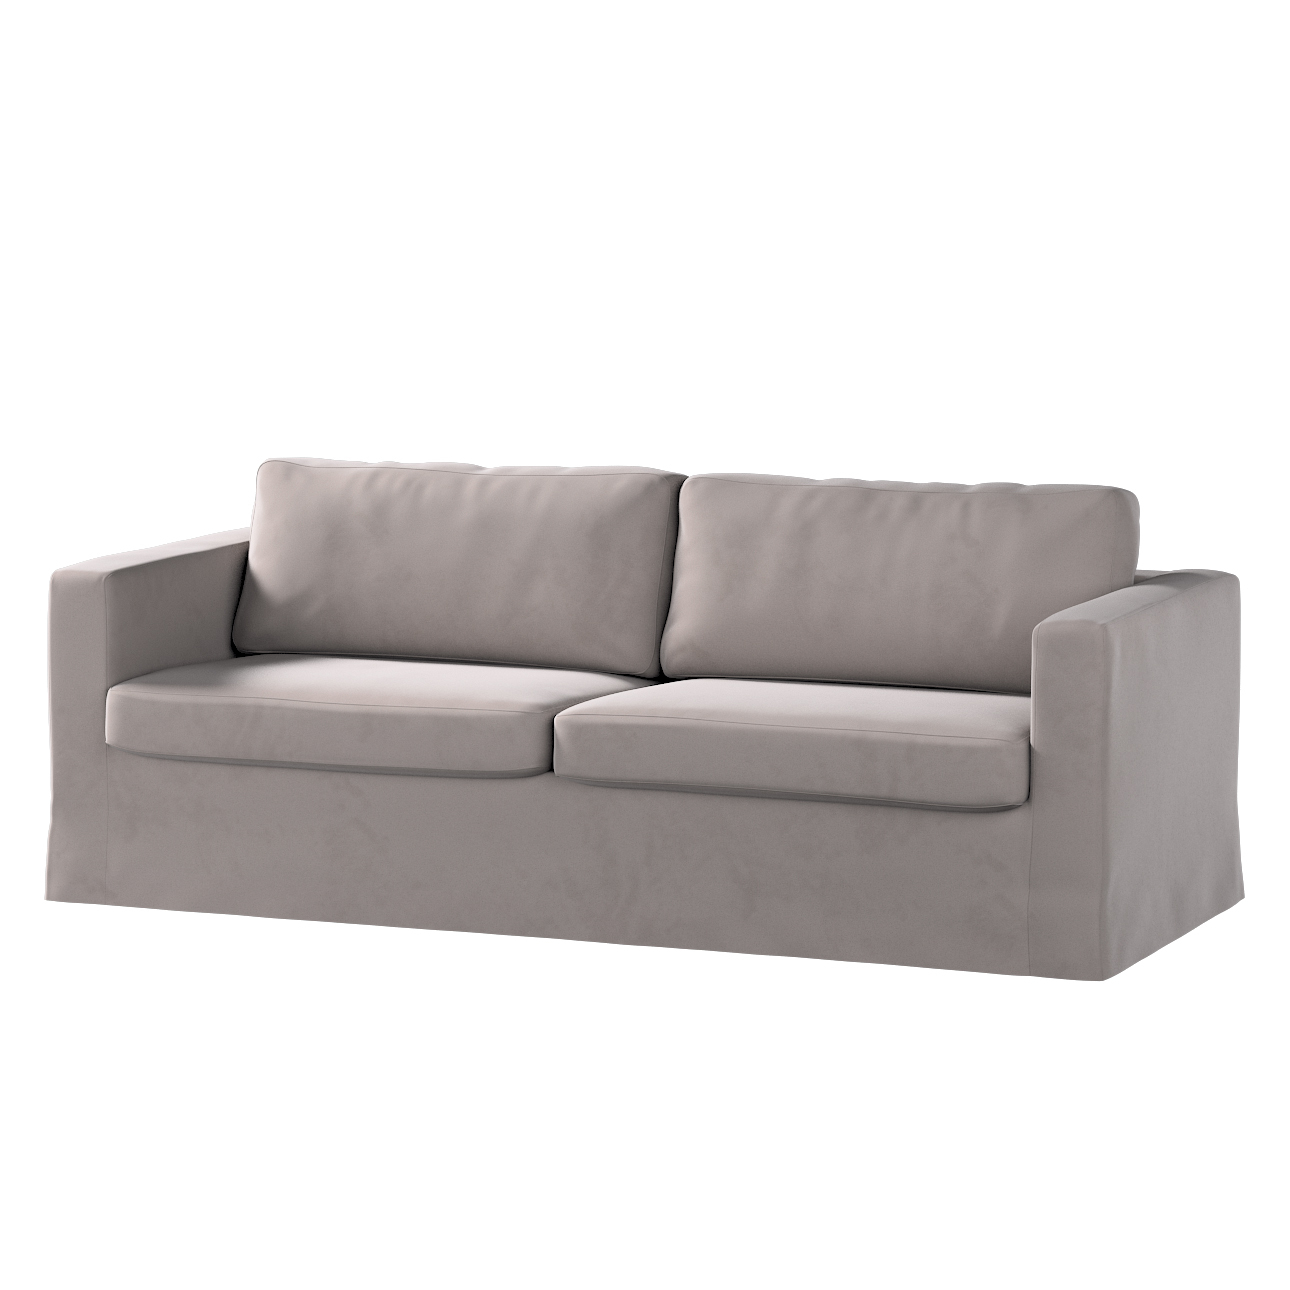 Bezug für Karlstad 3-Sitzer Sofa nicht ausklappbar, lang, mocca, Bezug für günstig online kaufen